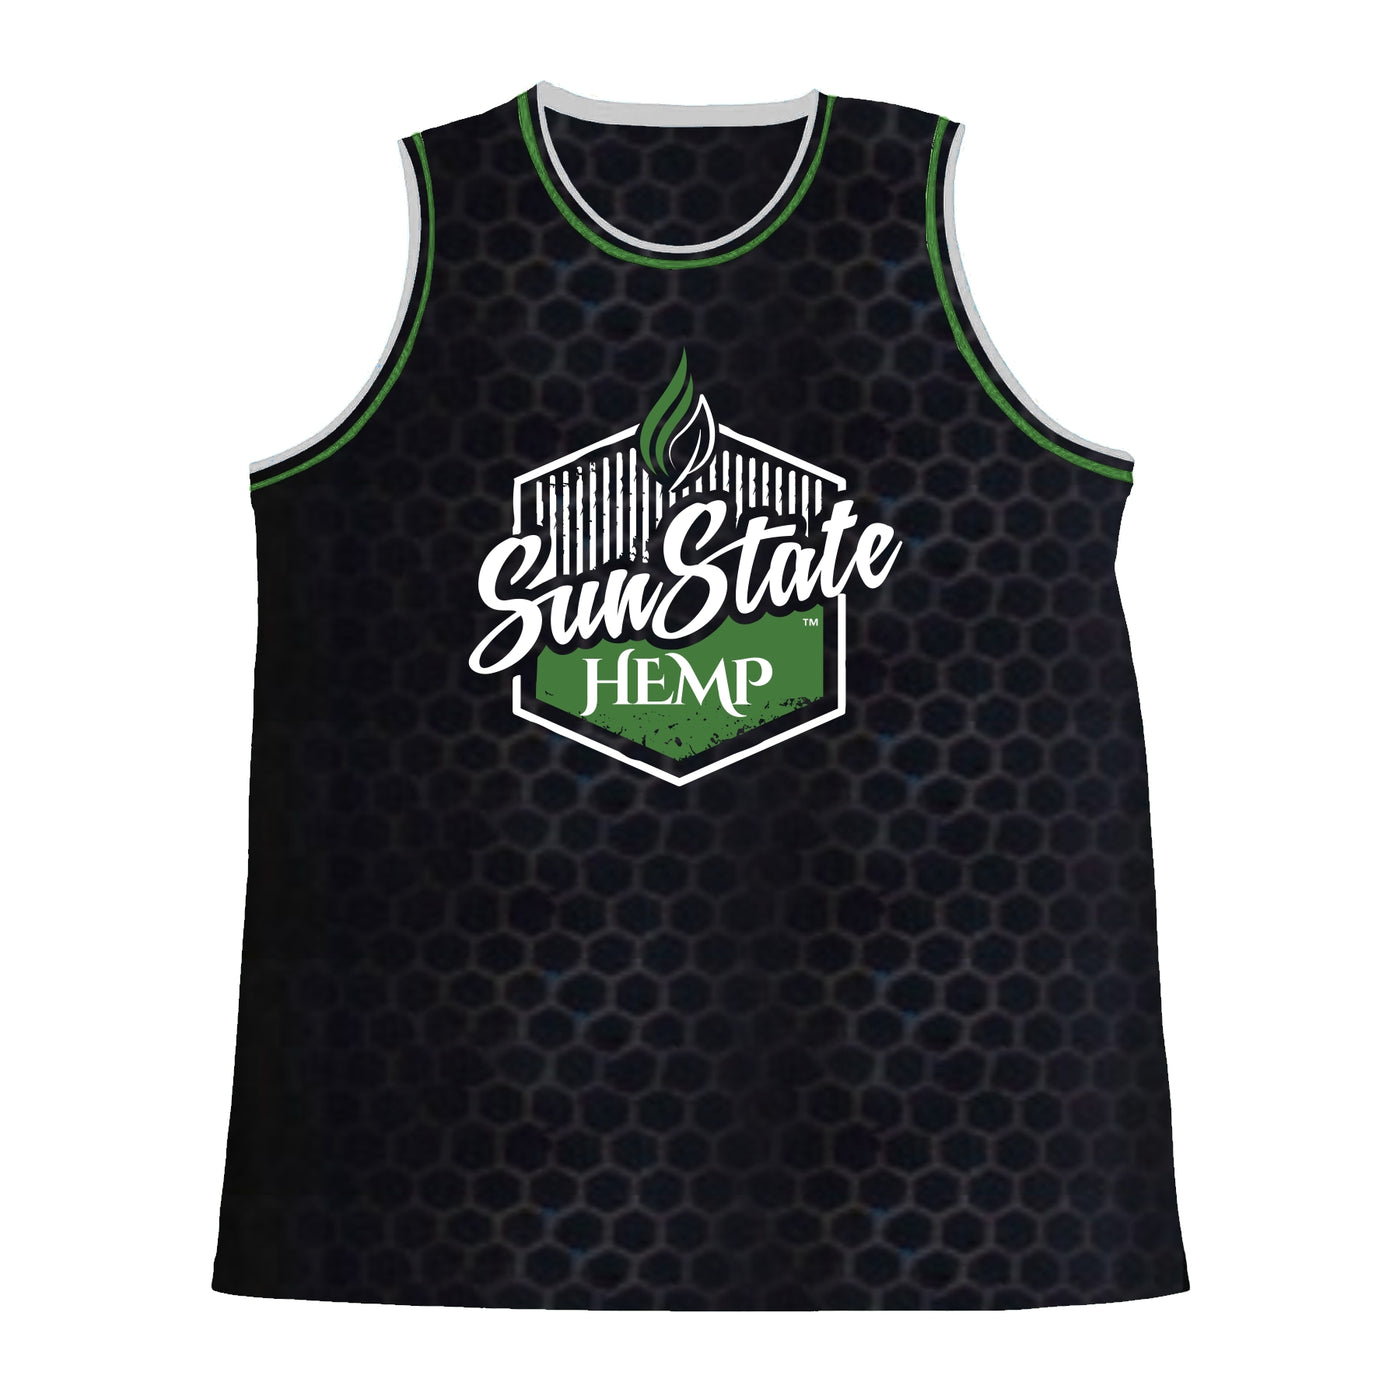 Sun State Hemp Basketball